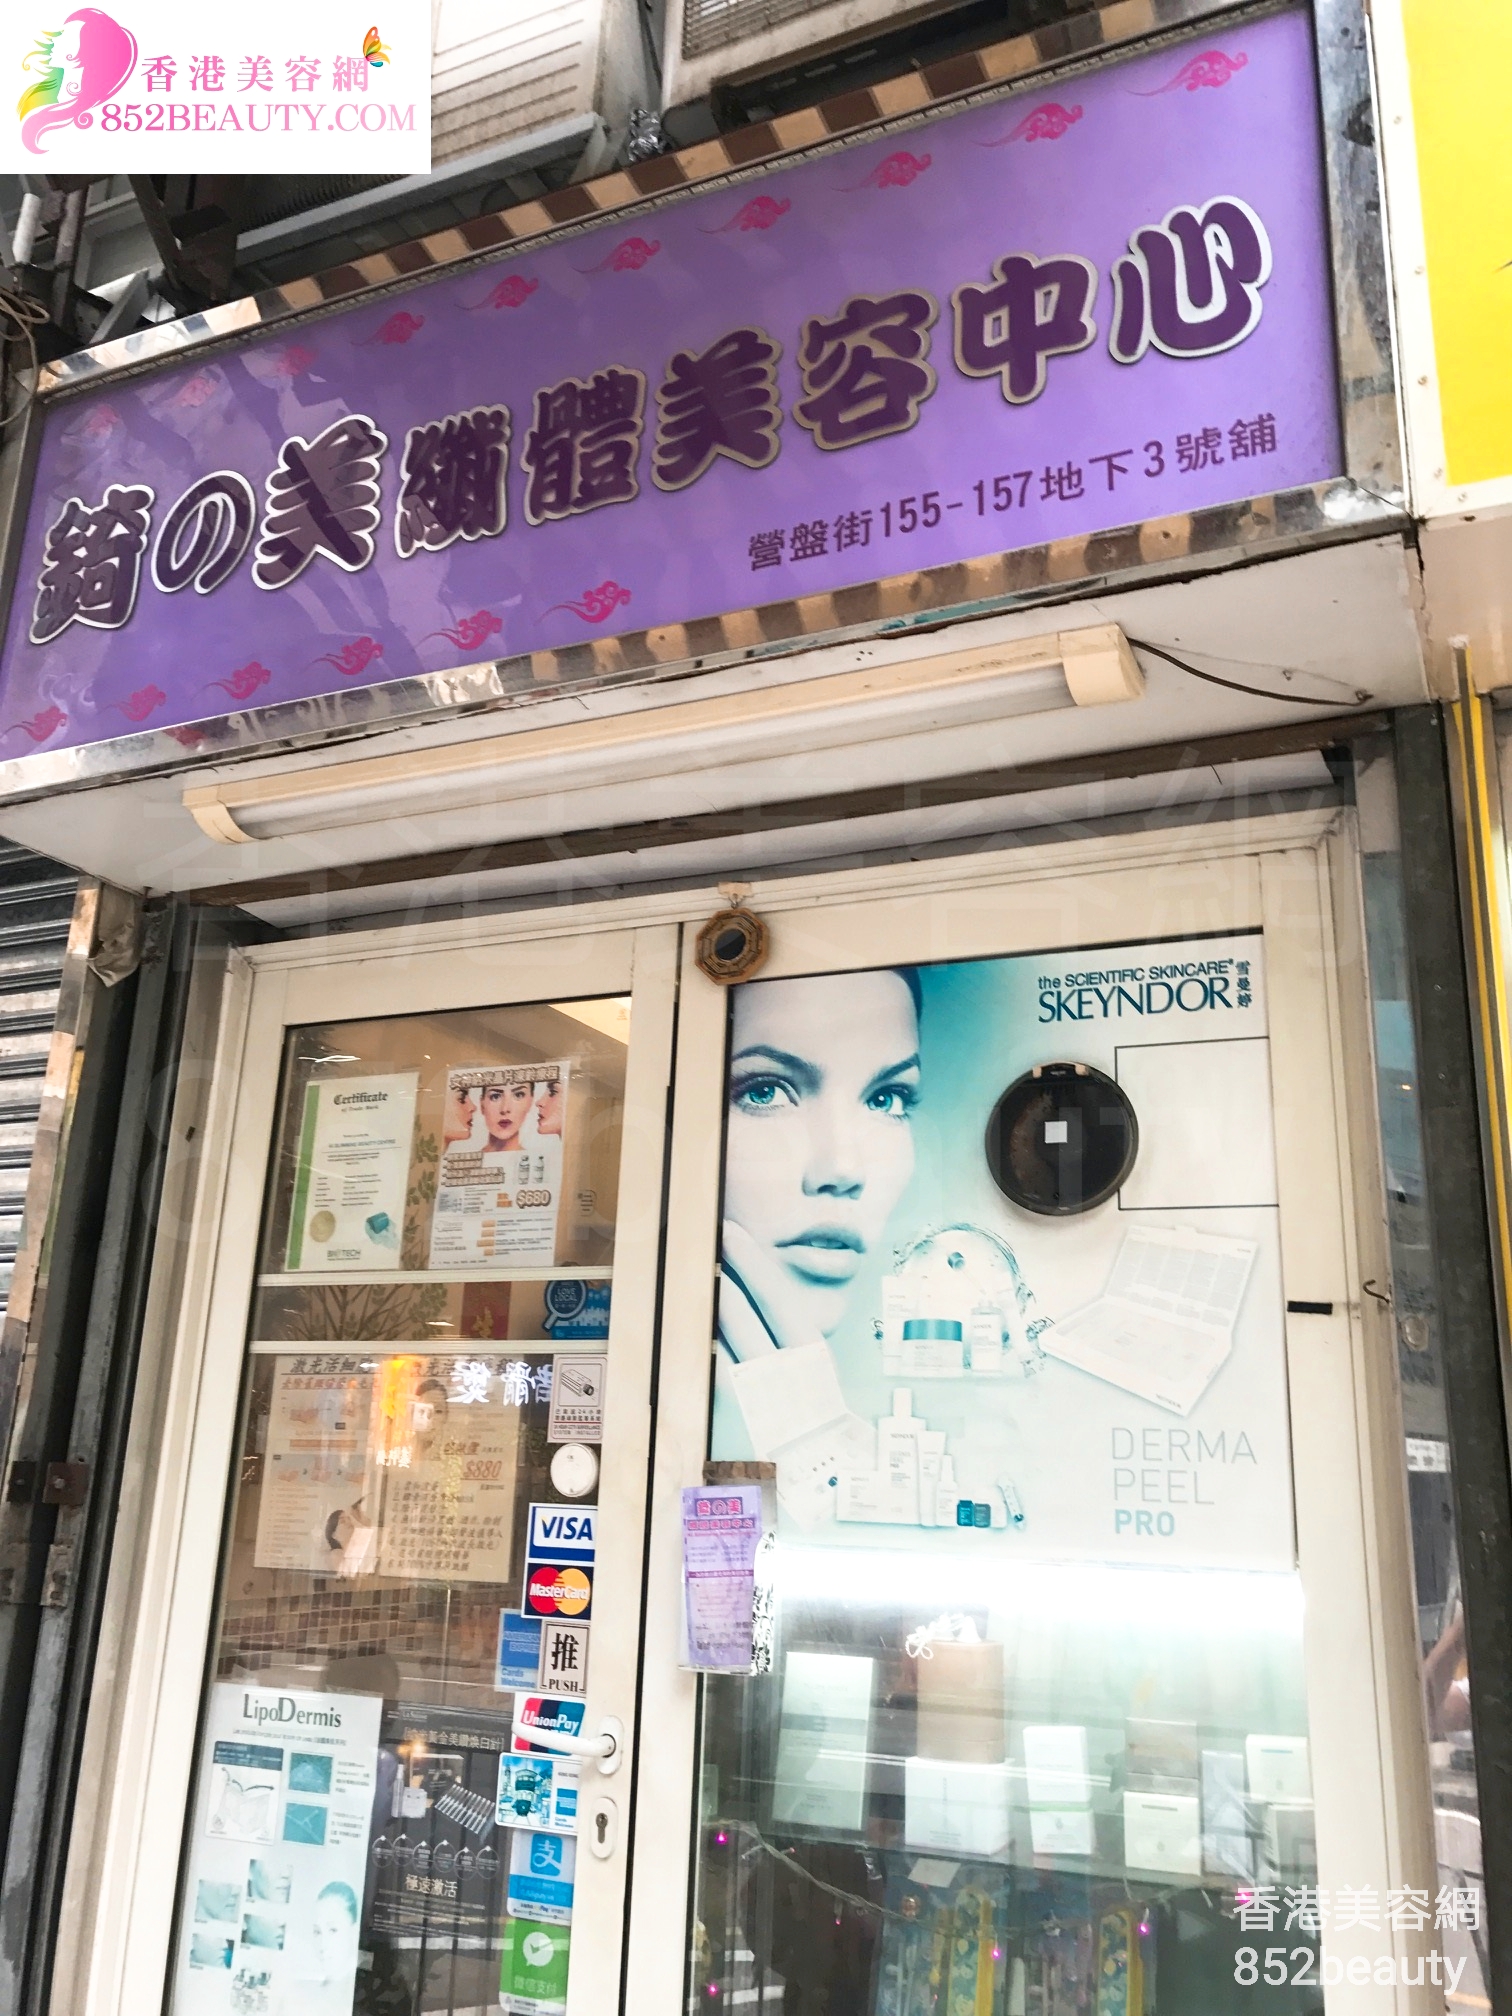 香港美容網 Hong Kong Beauty Salon 美容院 / 美容師: 錡の美 纖體美容中心